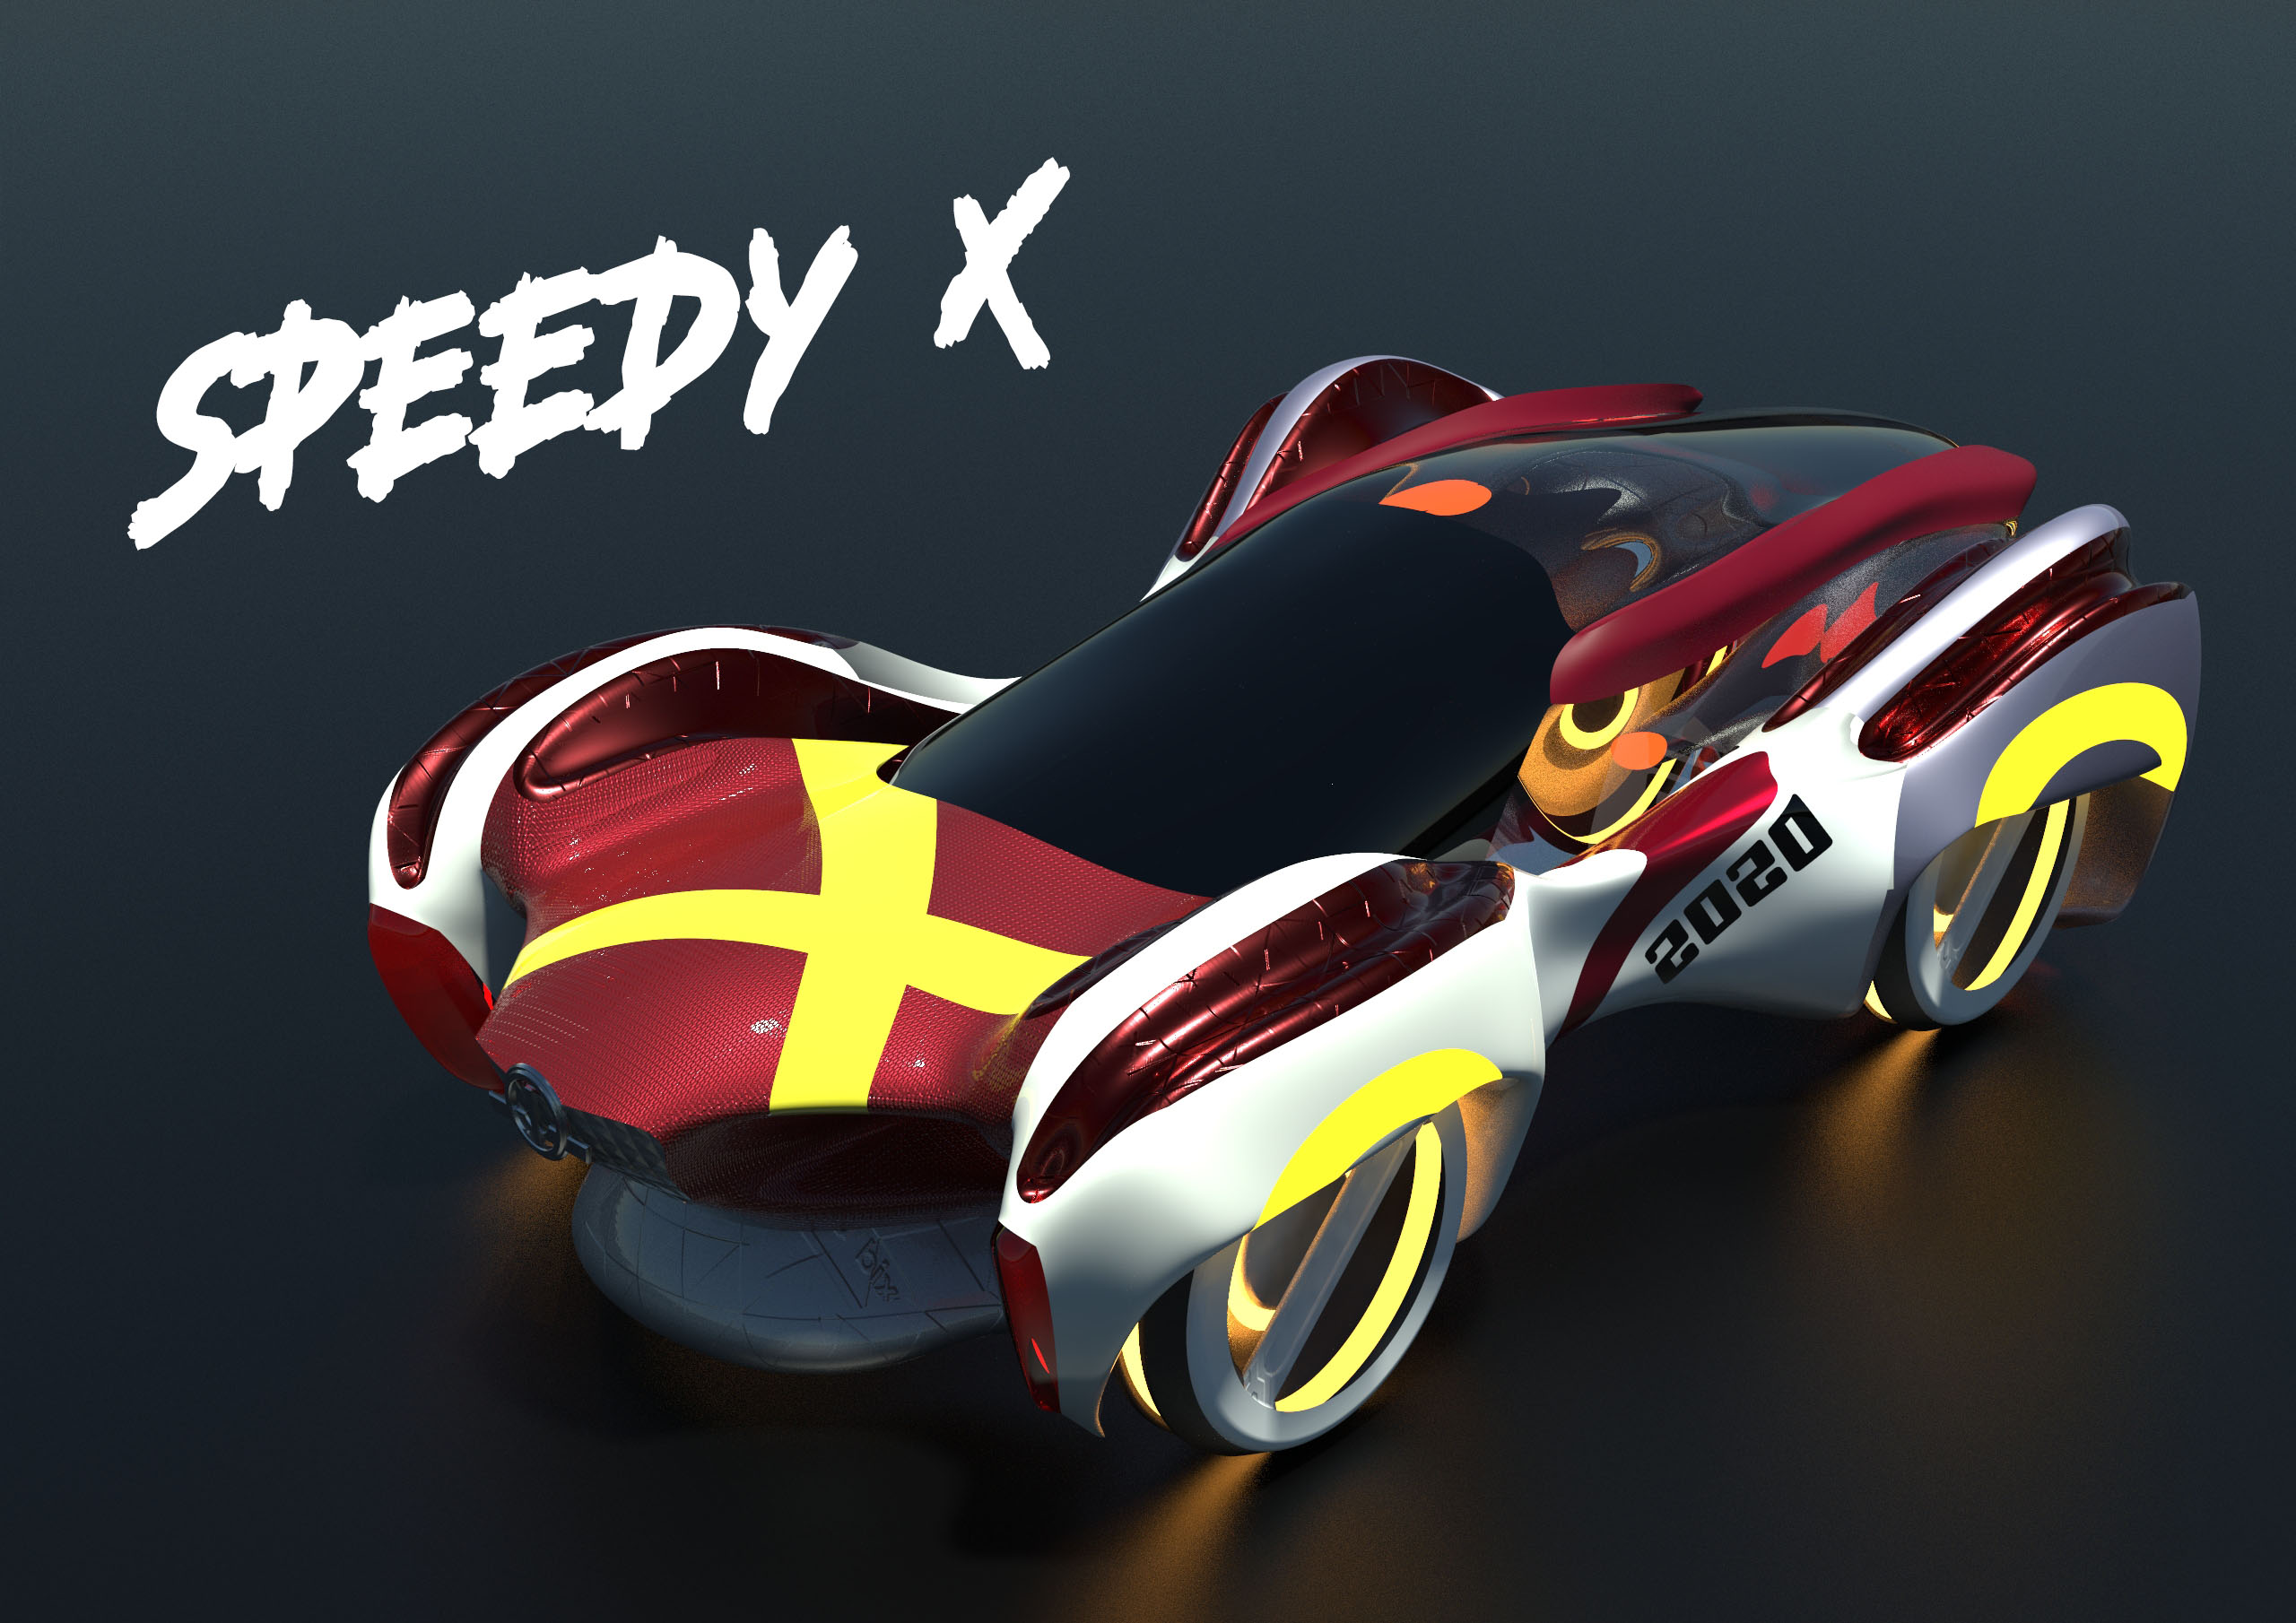 Speedy X